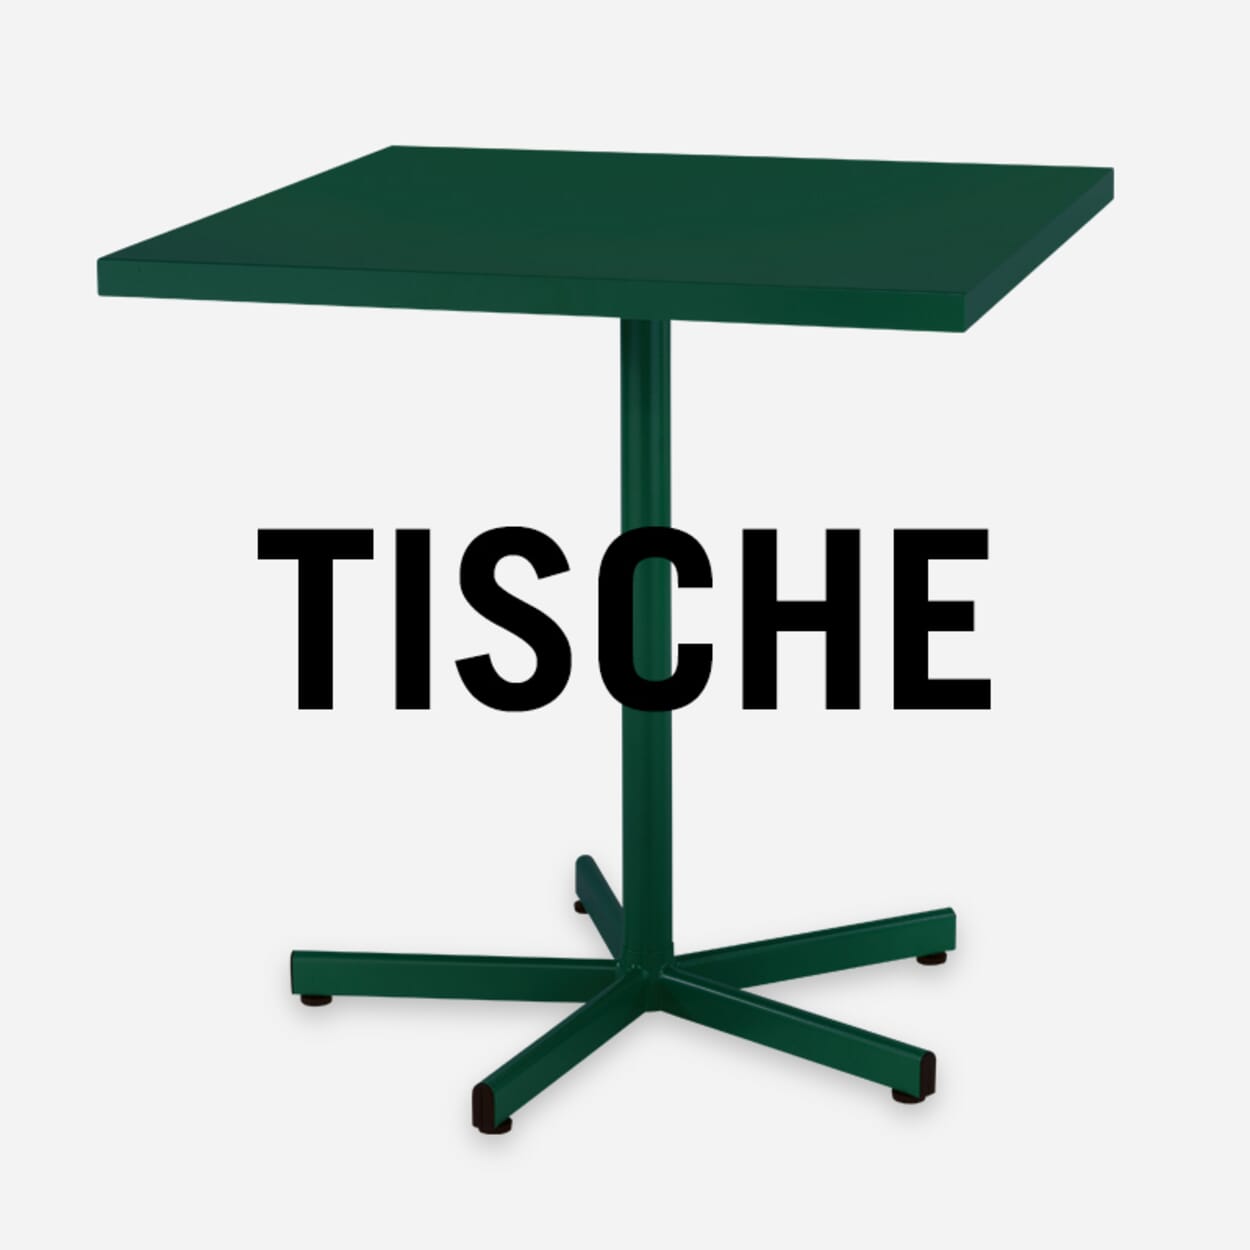 Tische